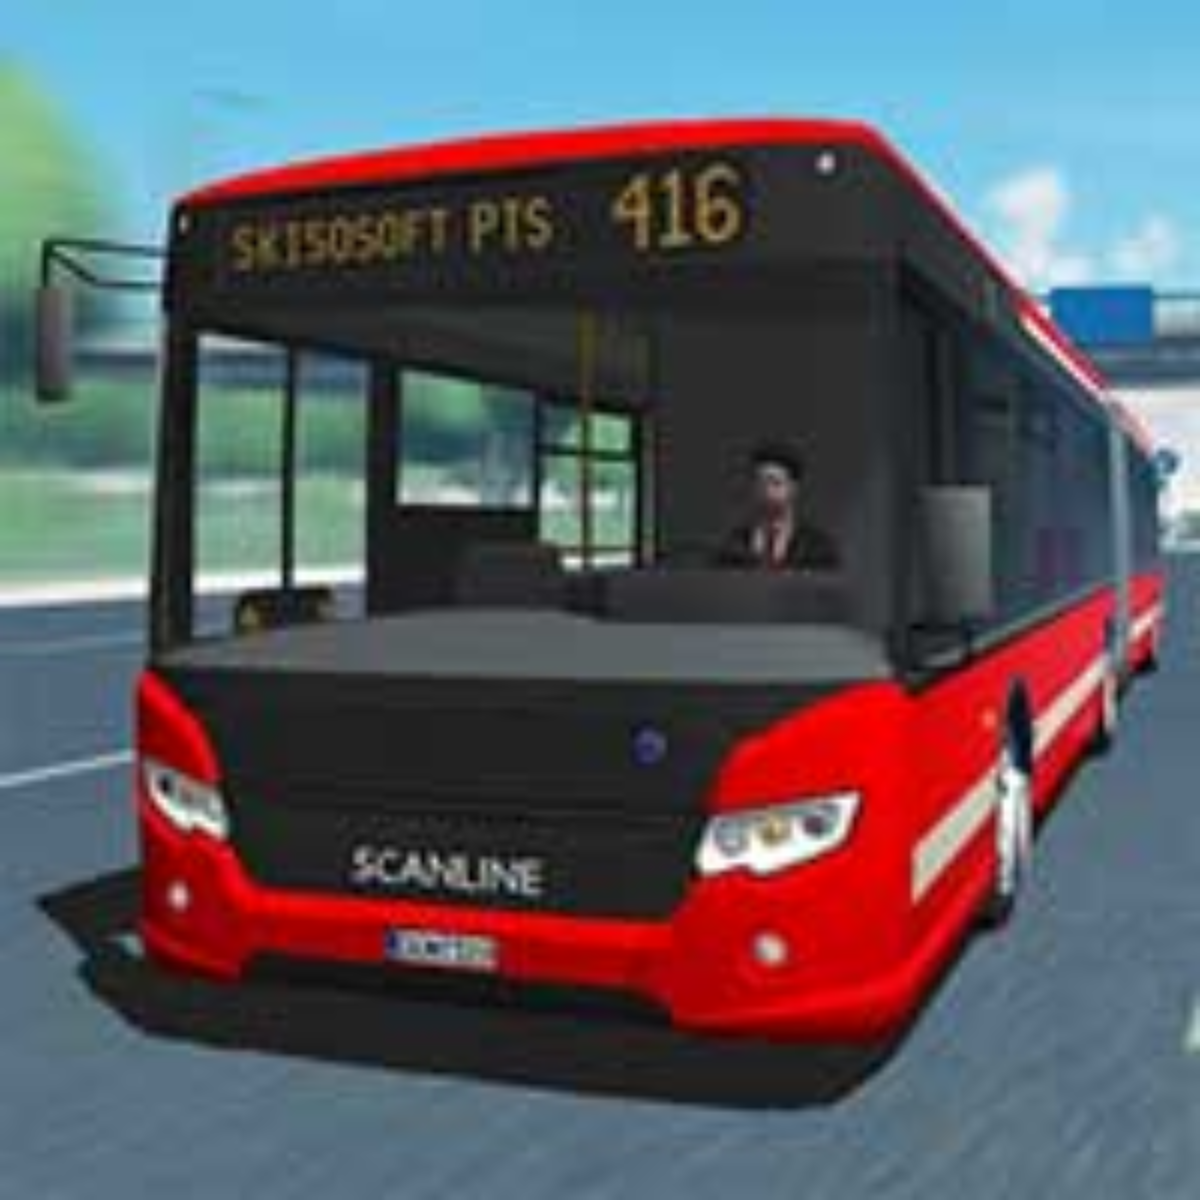 Baixe o Truck Simulator 2018: Europe Mod Apk v1.3.5 (dinheiro ilimitado)